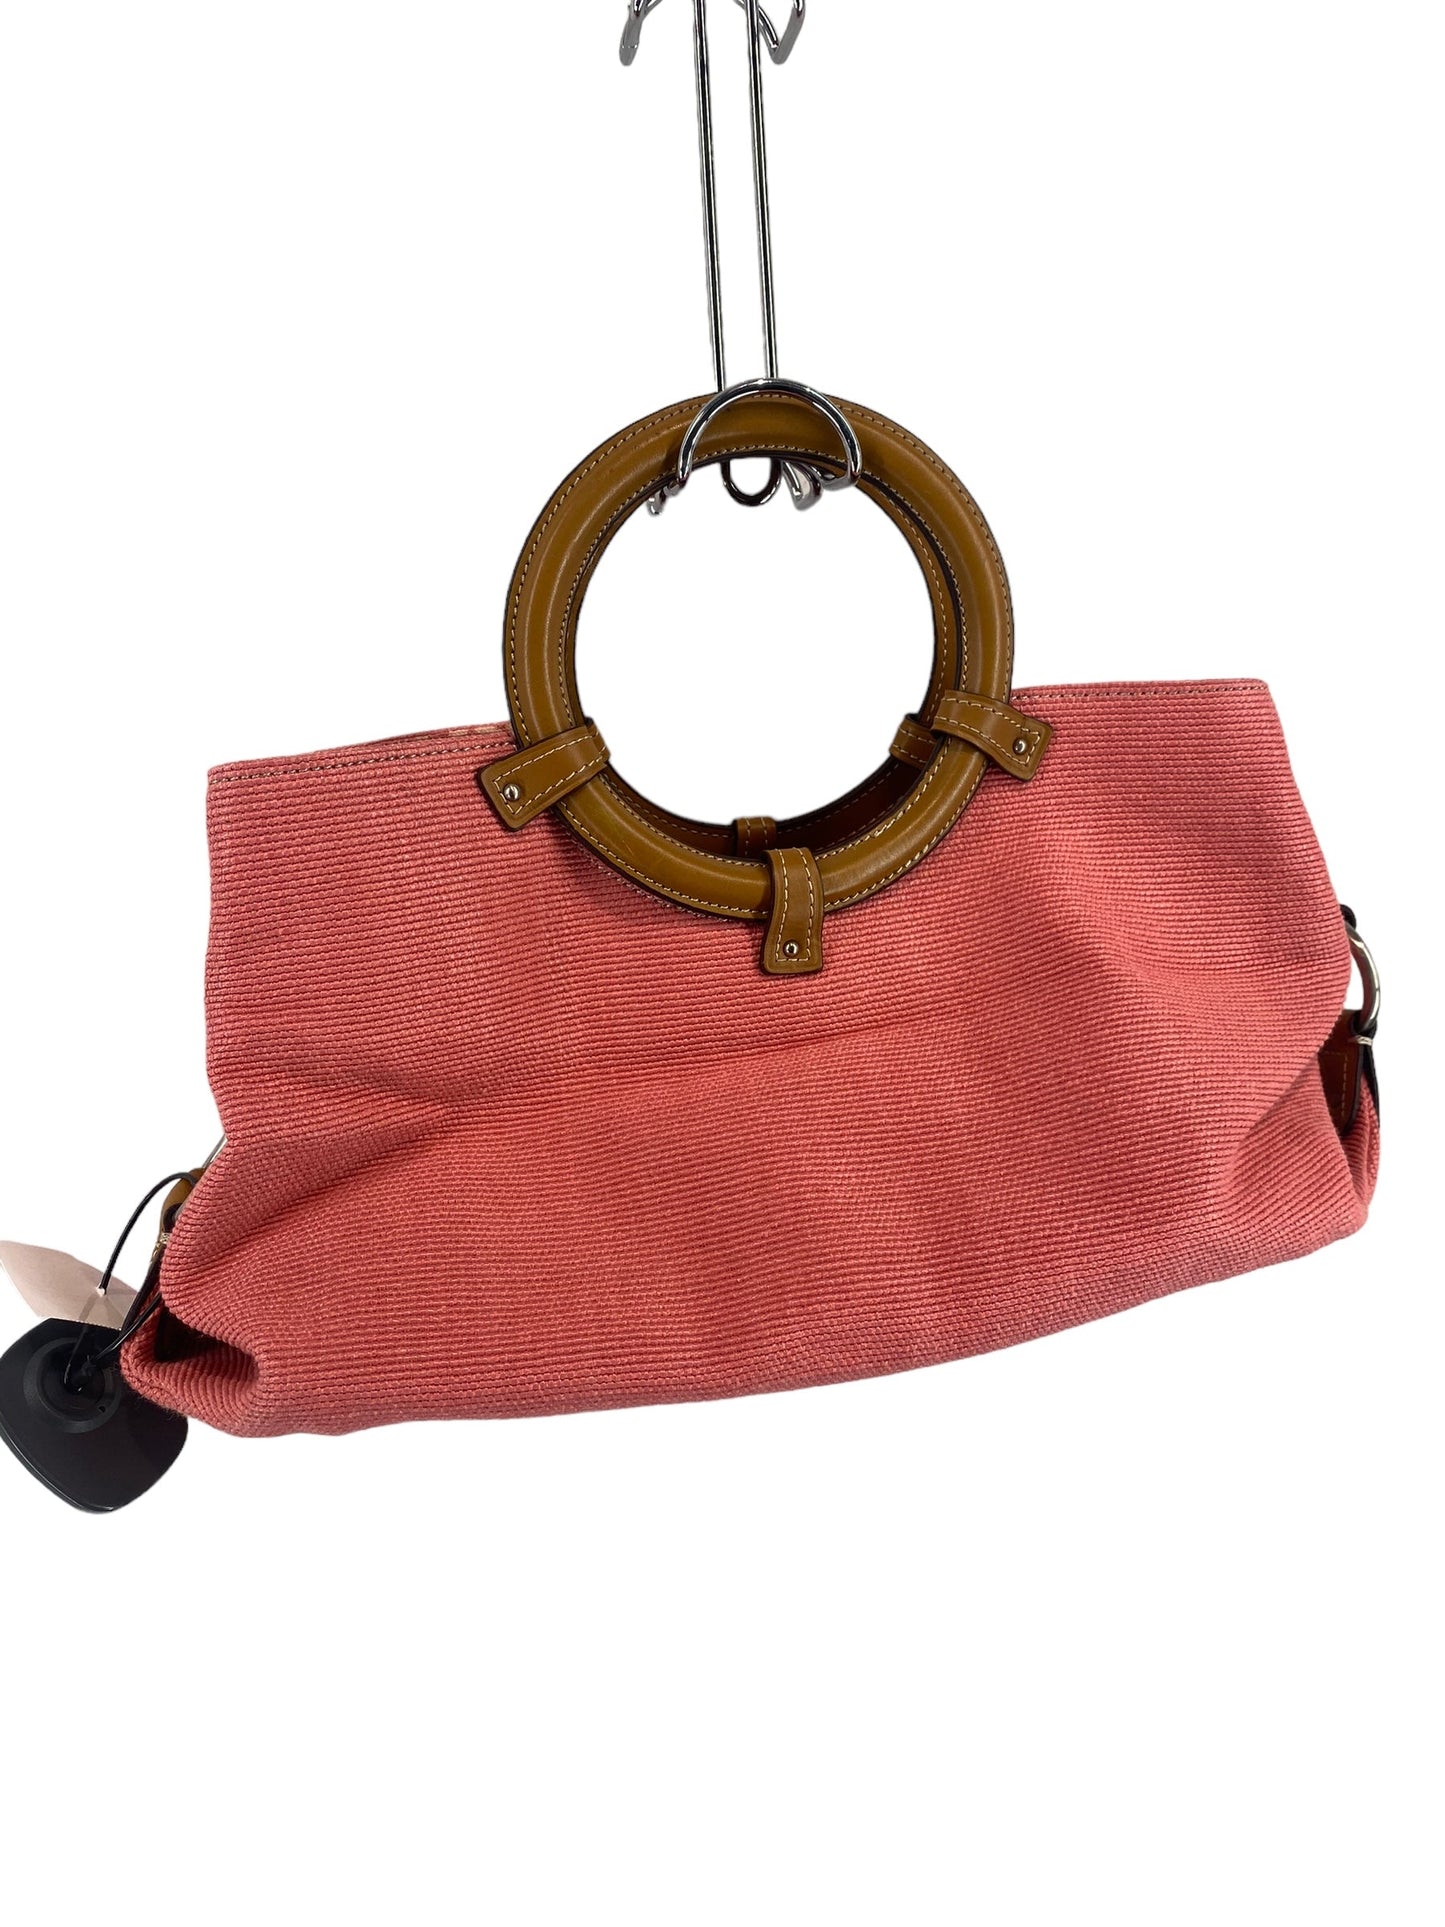 Handbag By Fossil  Size: Medium